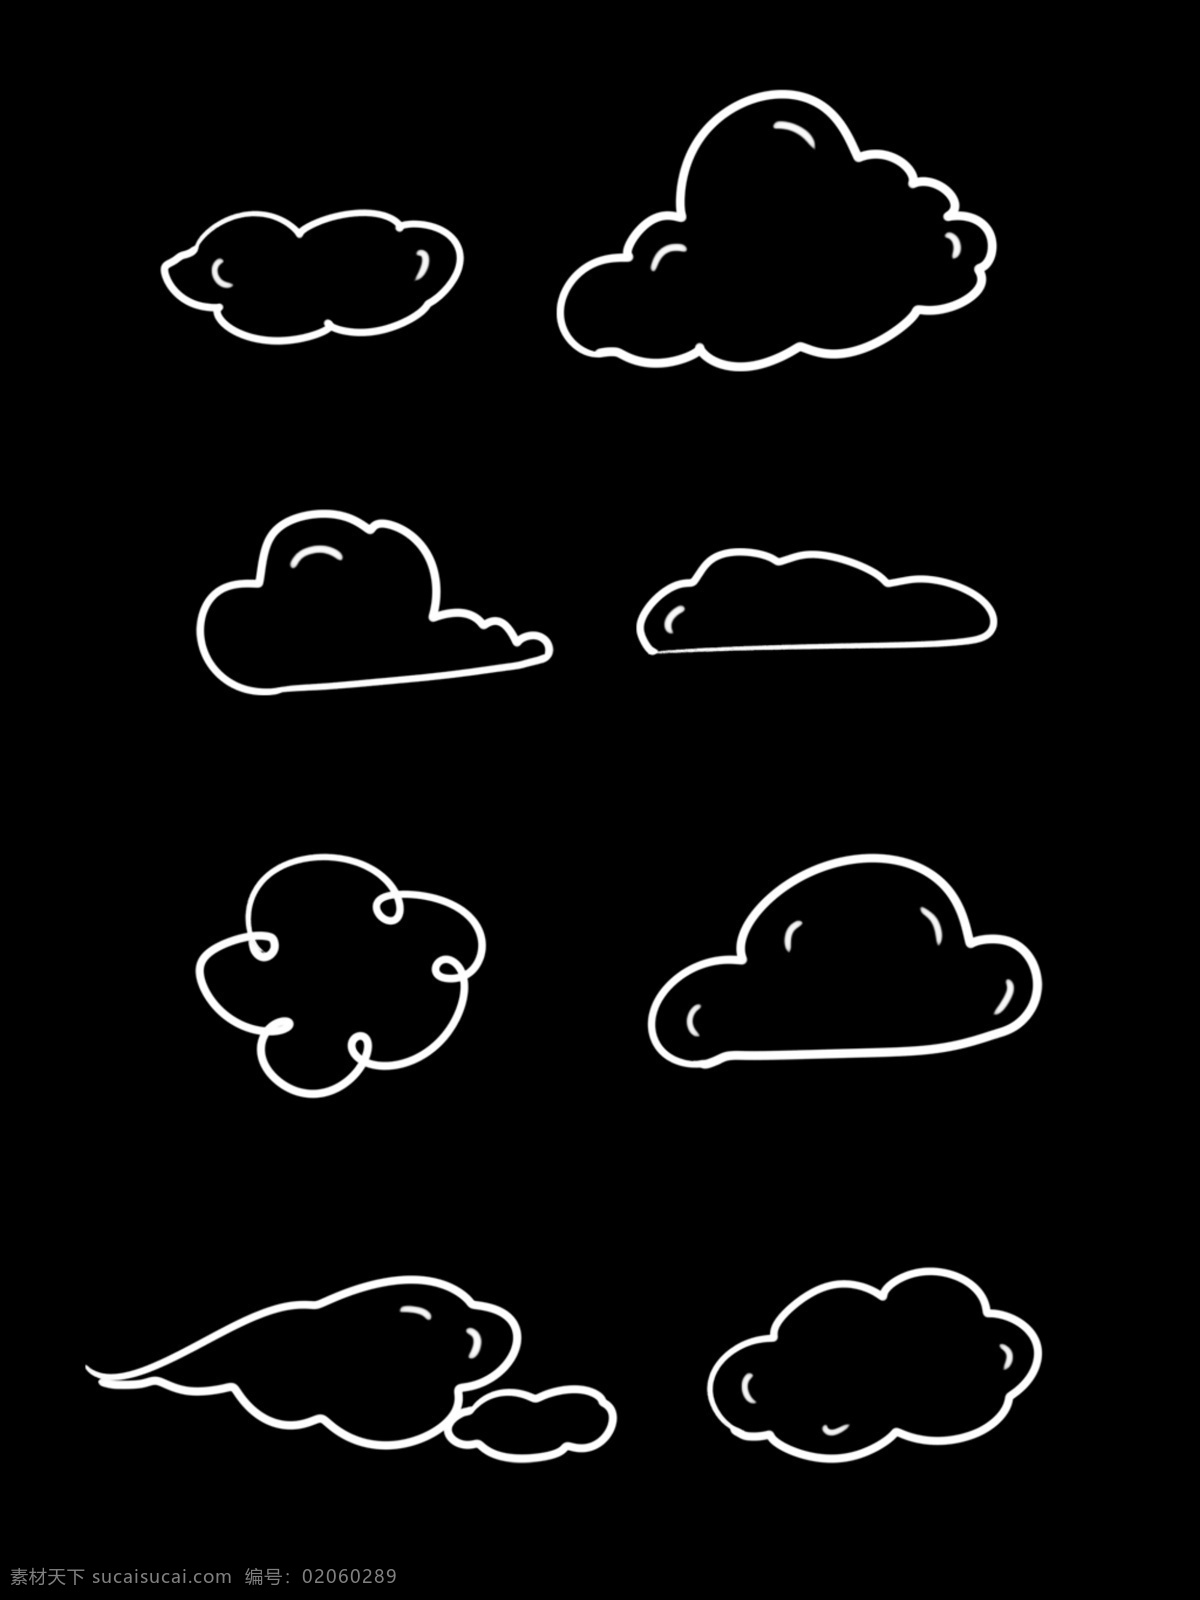 粉 笔画 简约 线条 手绘 云朵 边框 商用 元素 白云